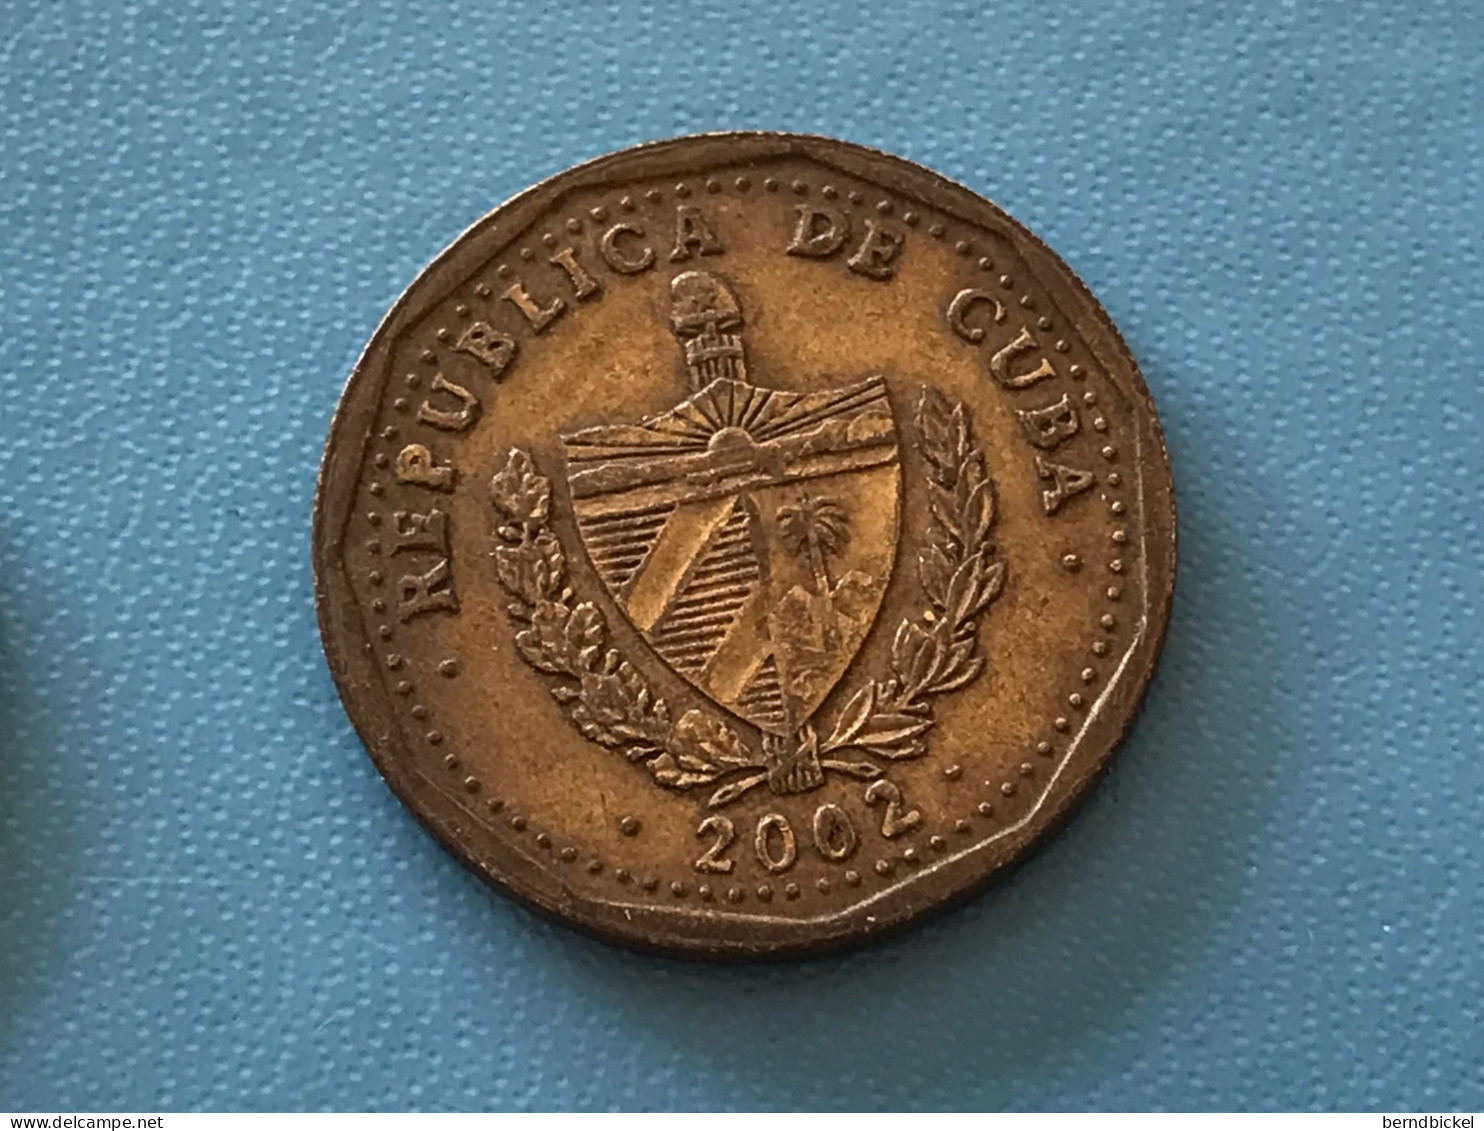 Münze Münzen Umlaufmünze Kuba 1 Peso 2002 - Cuba